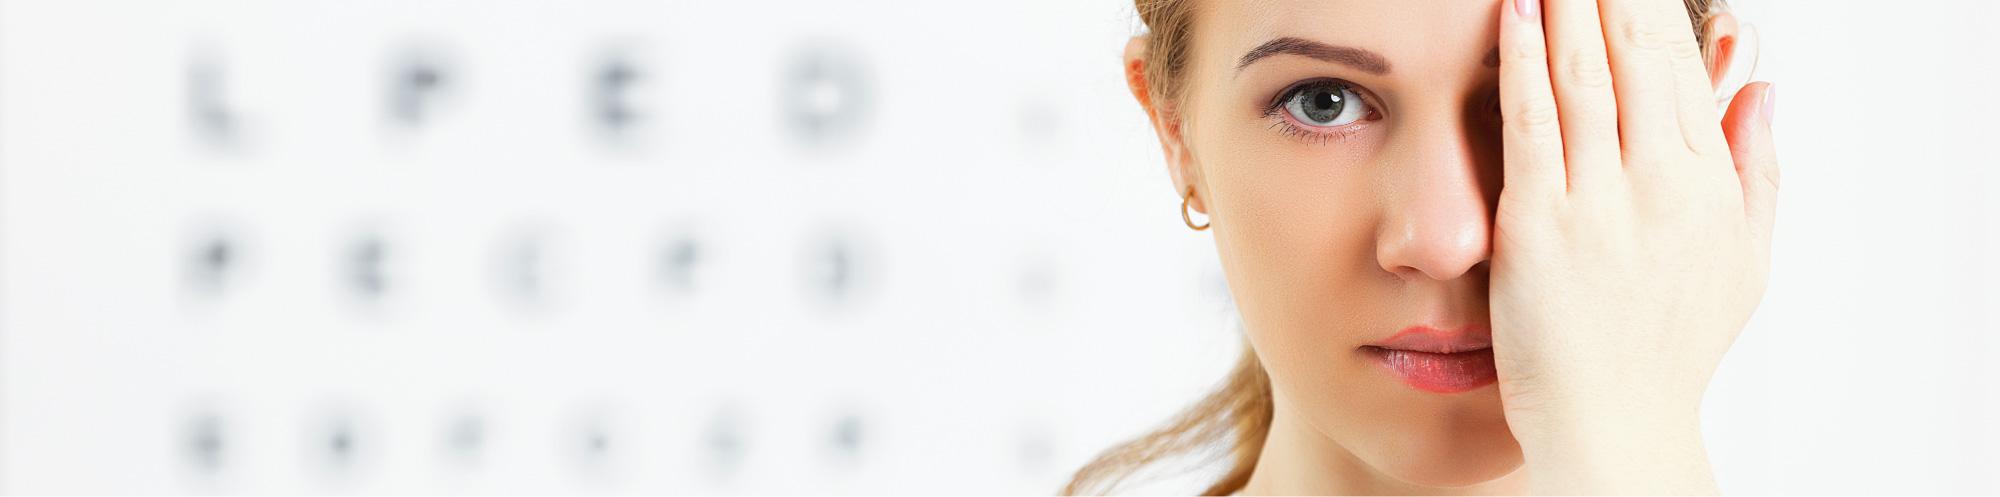 Non-mydriatische Weitwinkel-Funduskamera - Augenarztpraxis Buchen